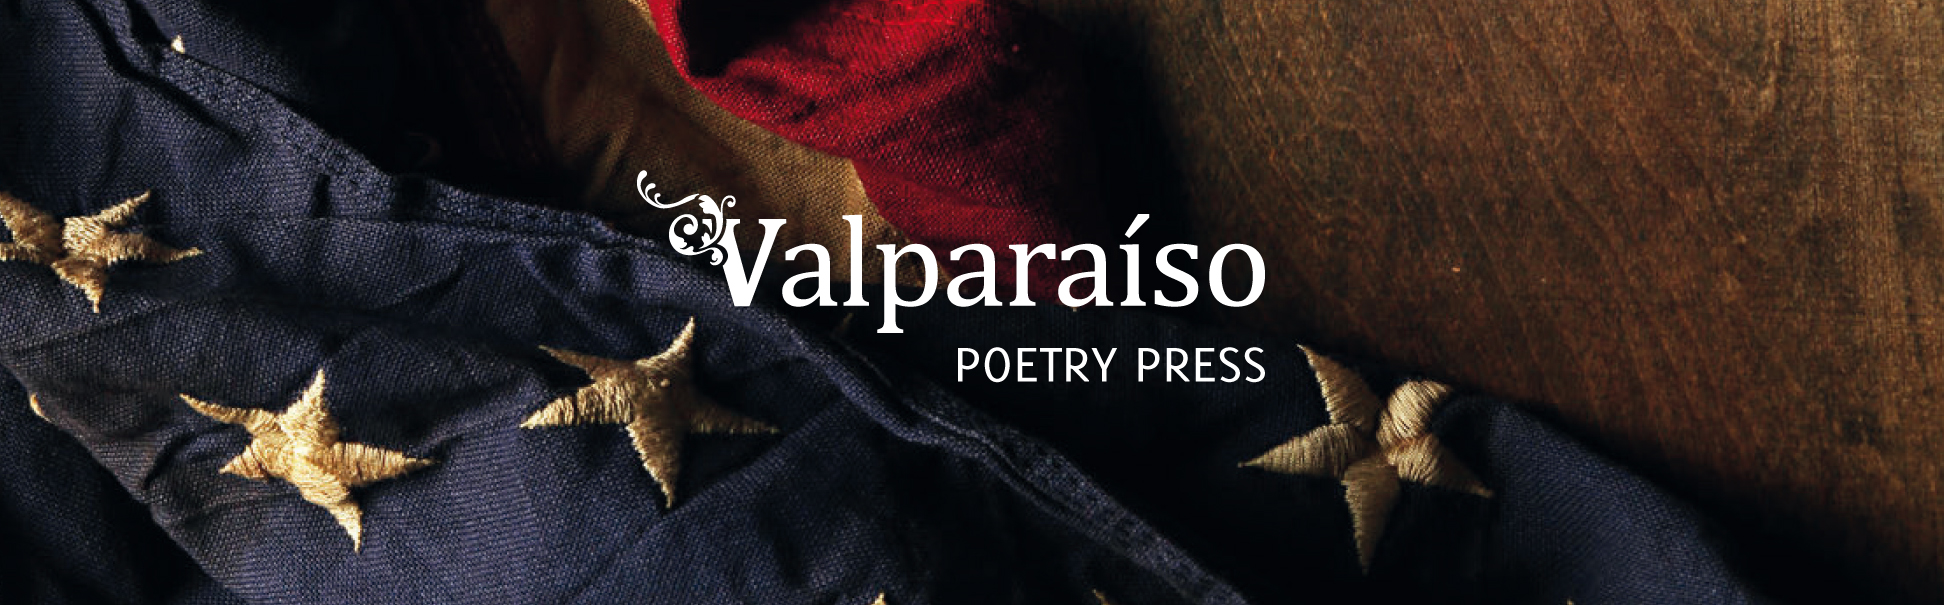 Poetry Prize Poet in New York - In Spanish